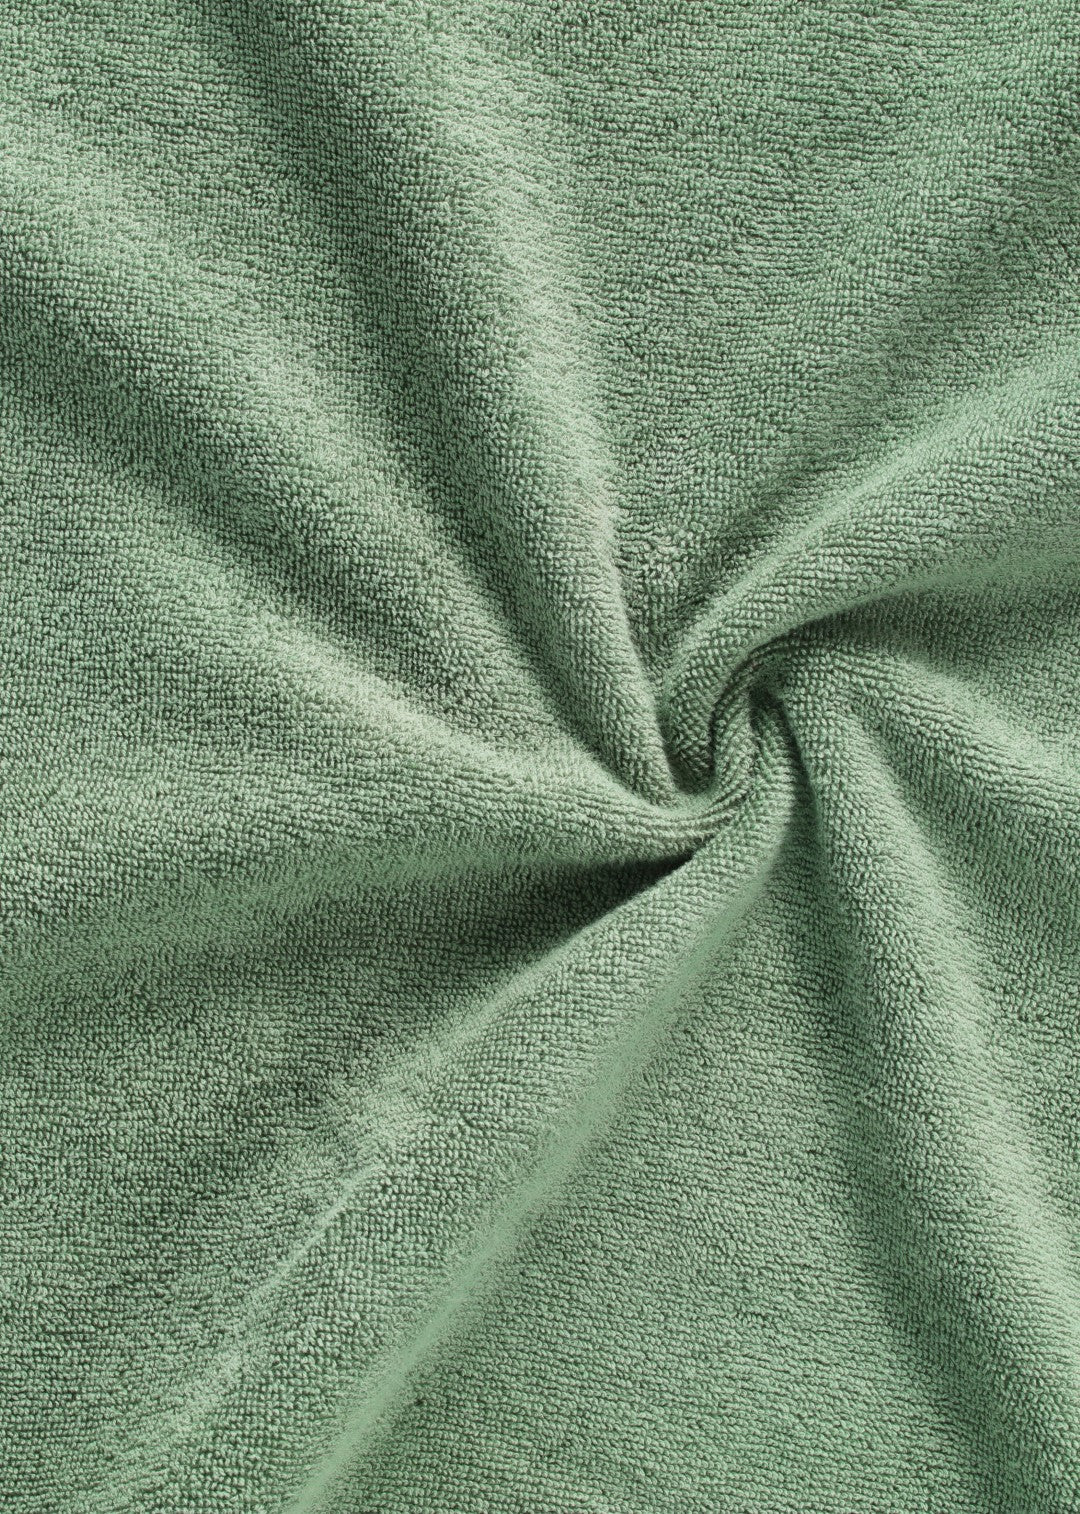 Håndklædepakke 6 stk - Mørkegrøn